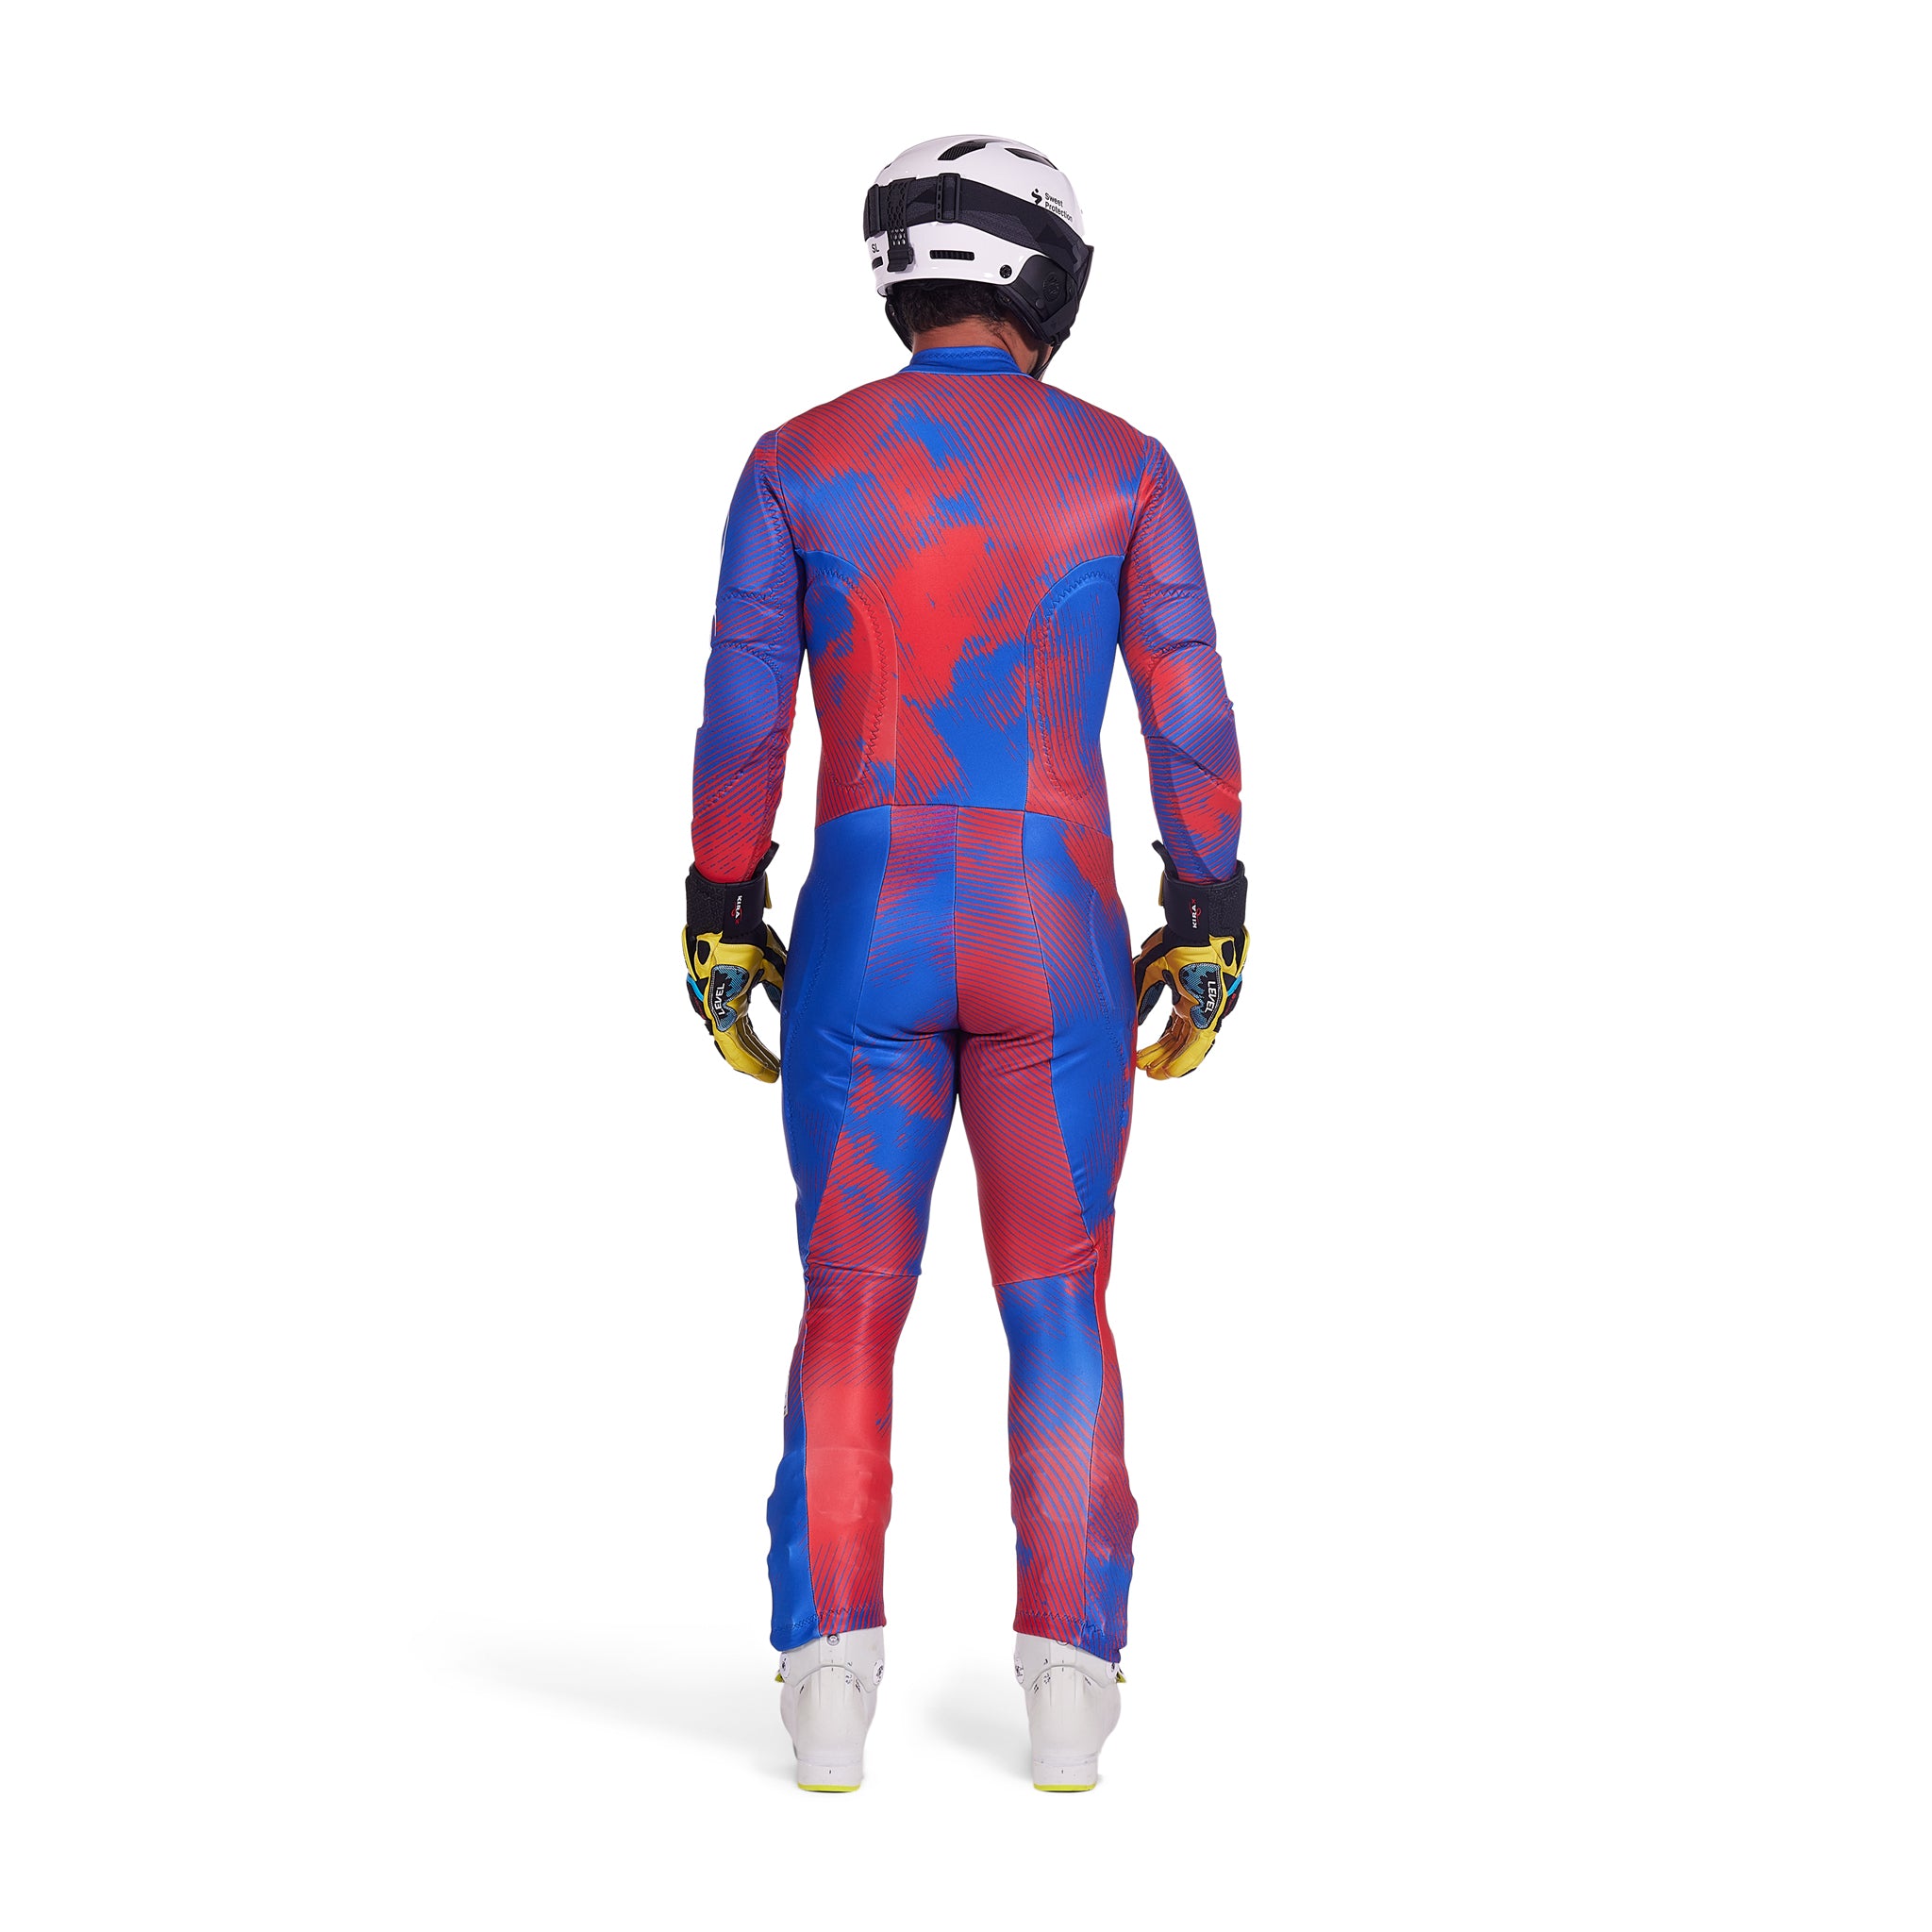 Mens Performance GS Race Suit - Electric Blue